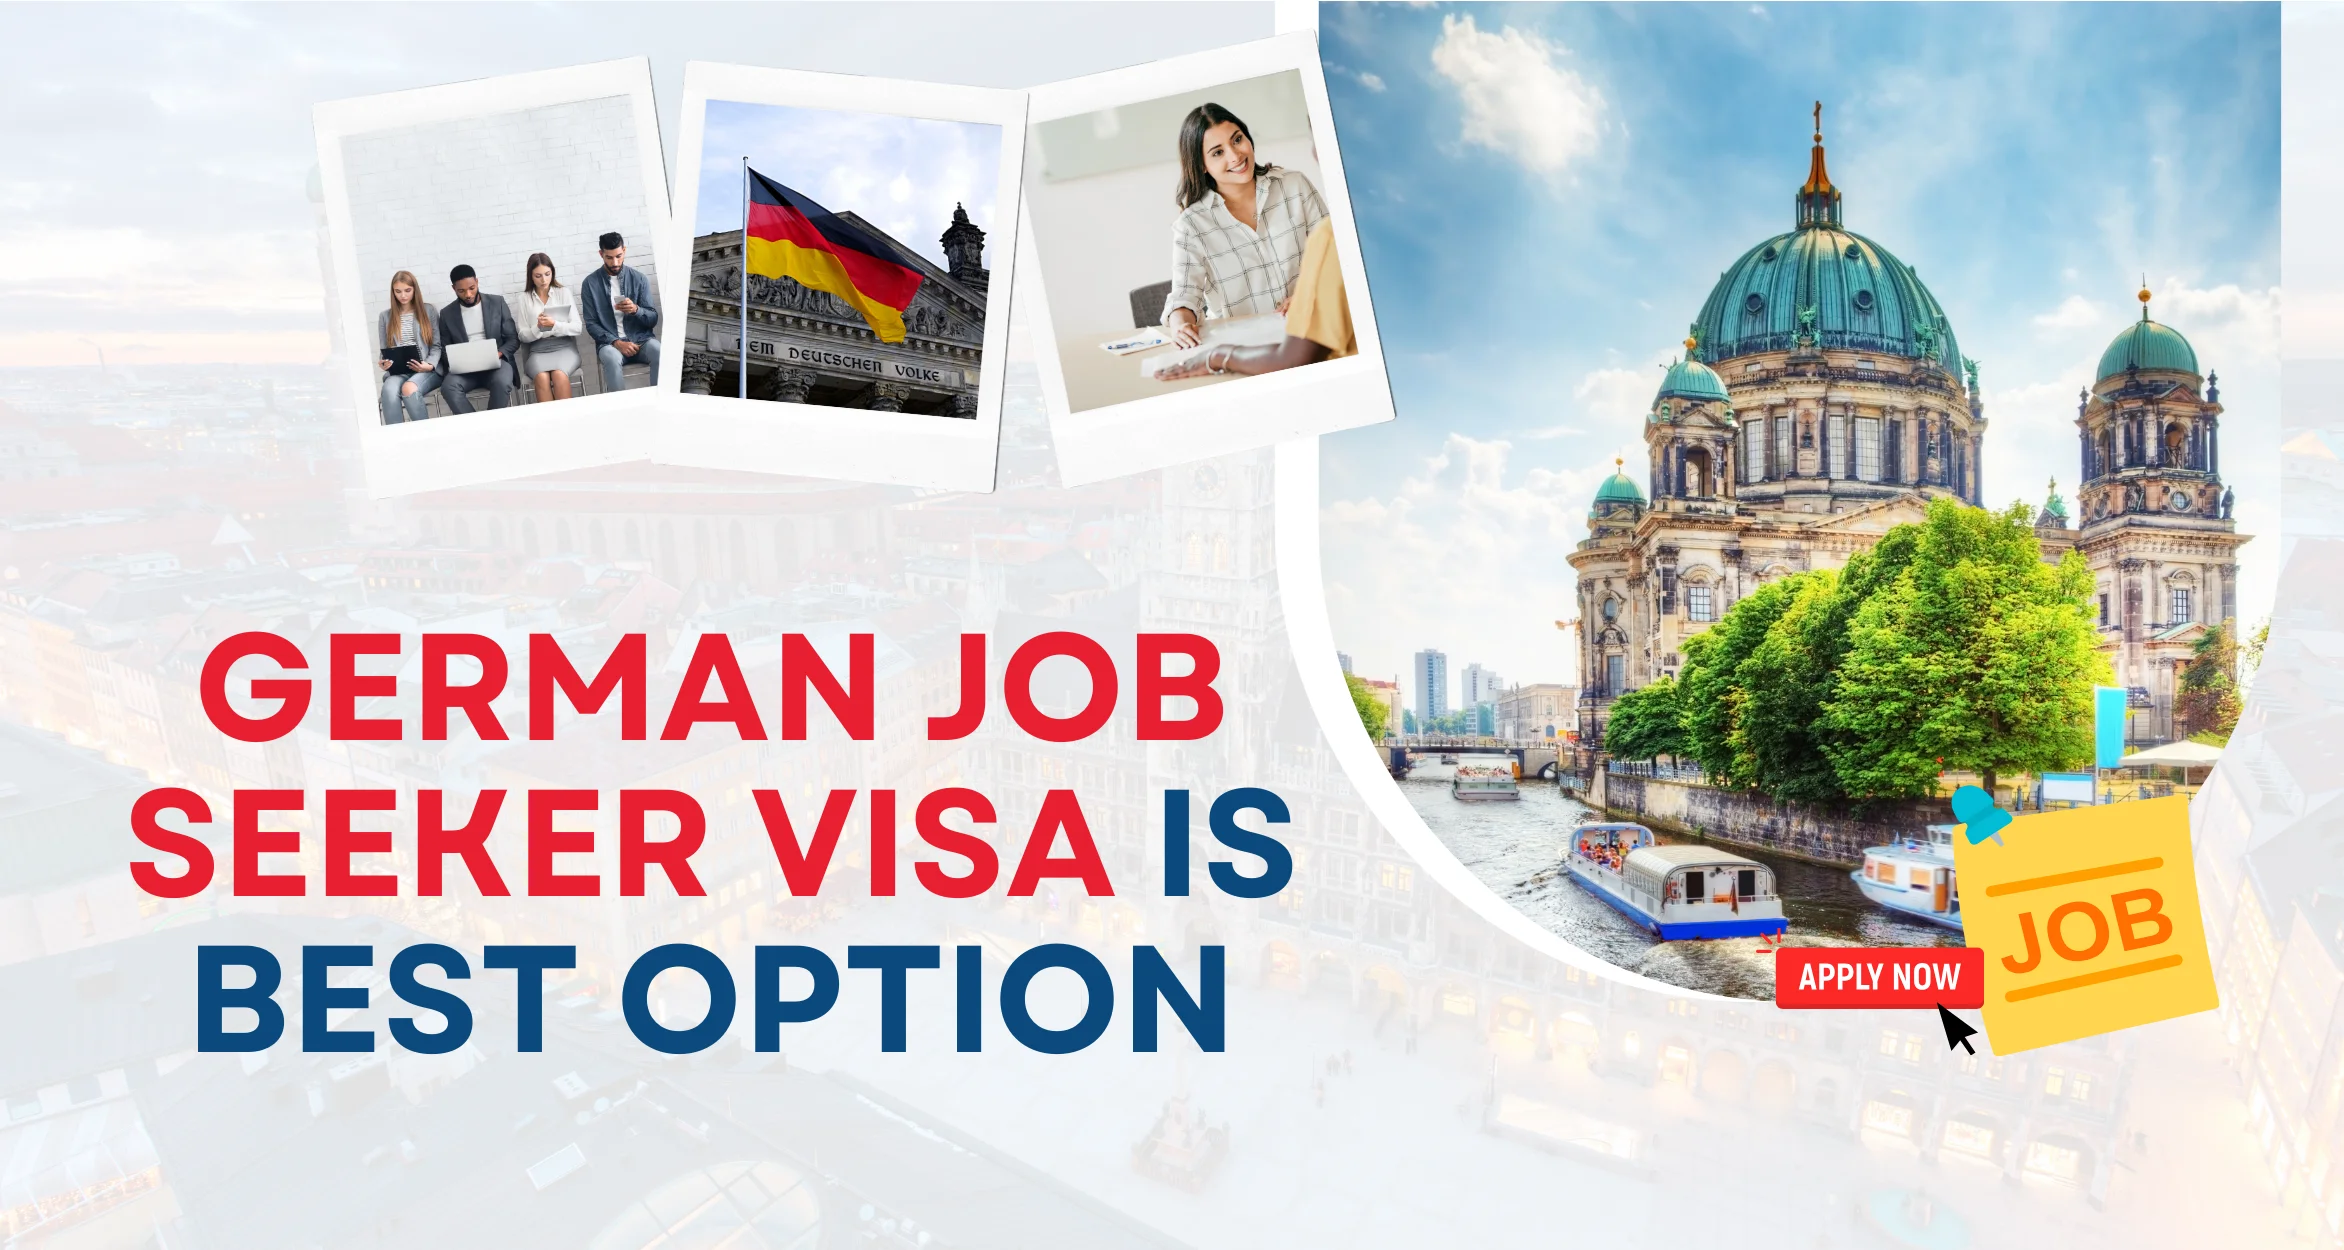 German Job Seeker visa is best option